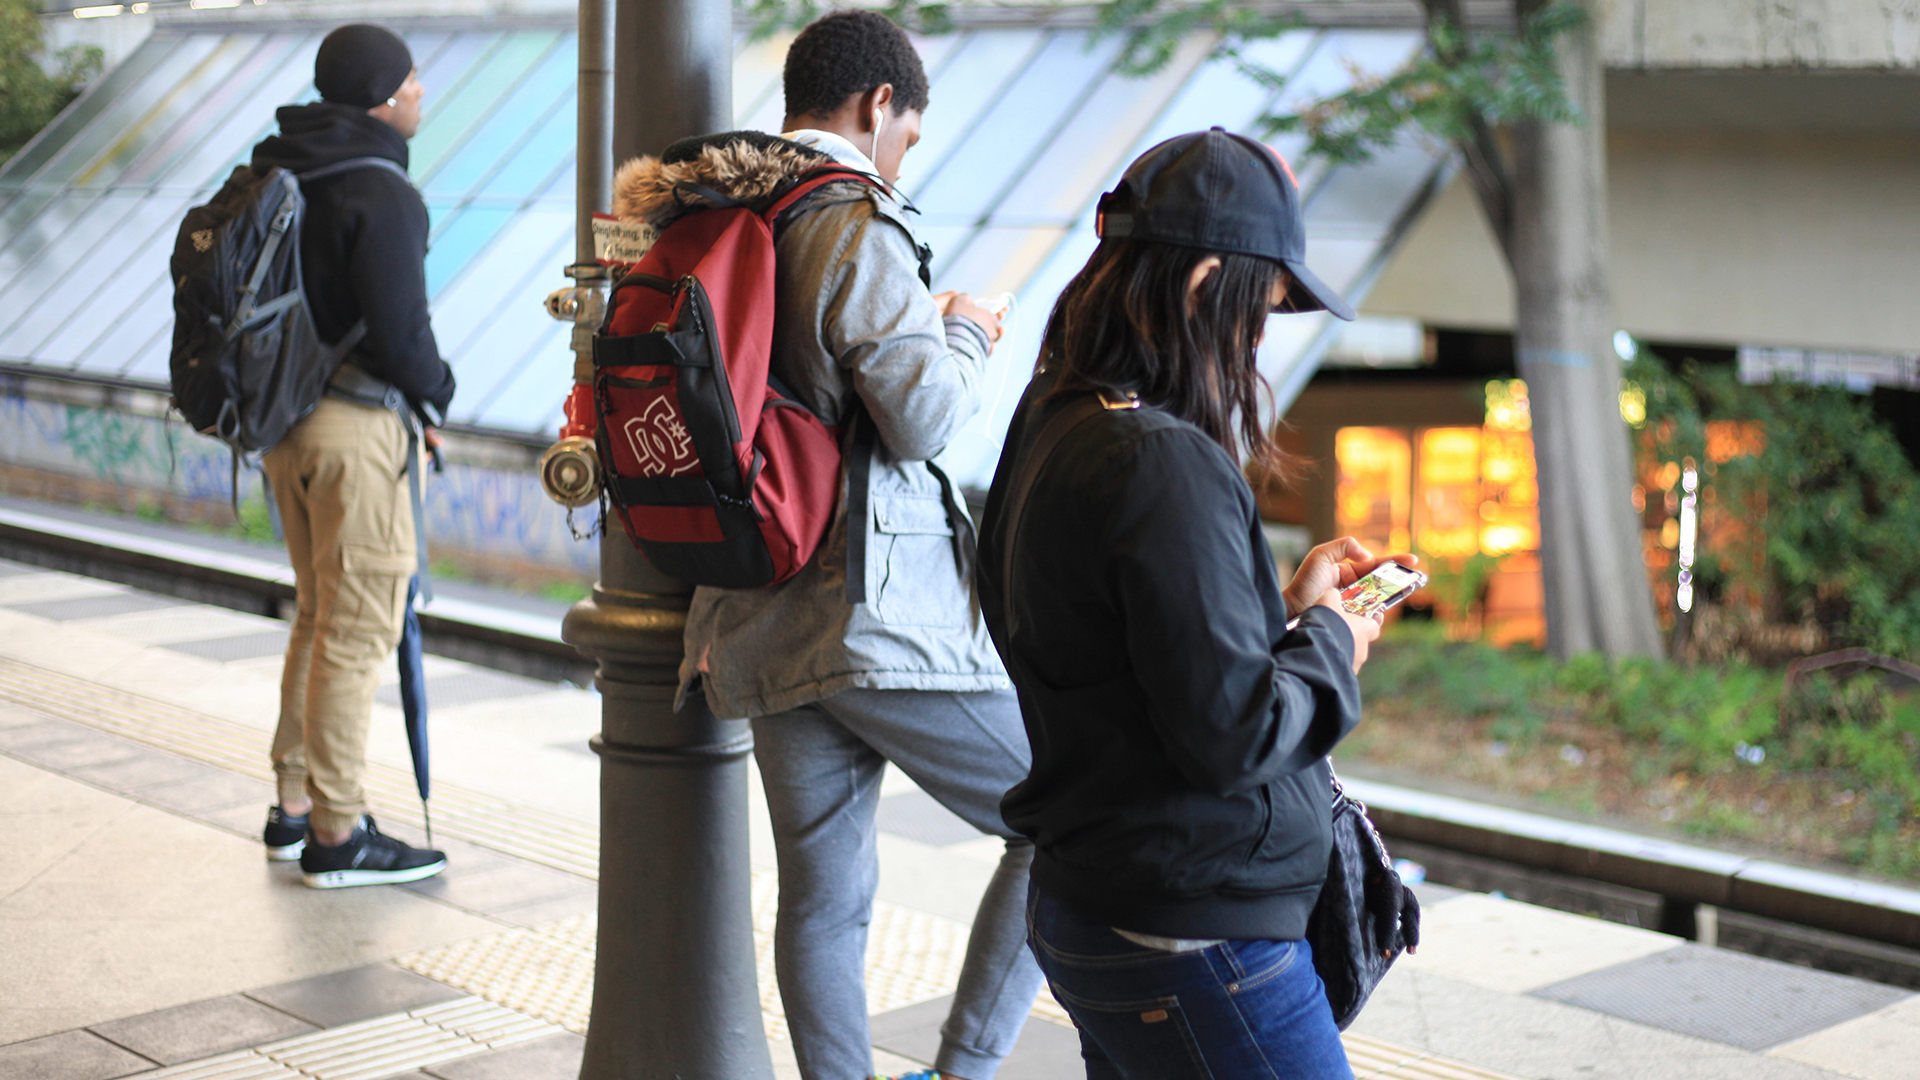 Jugendliche schauen in Berlin auf einem Gleis einer S-Bahnstation auf ihre Smartphones. | picture alliance / Wolfram Stein